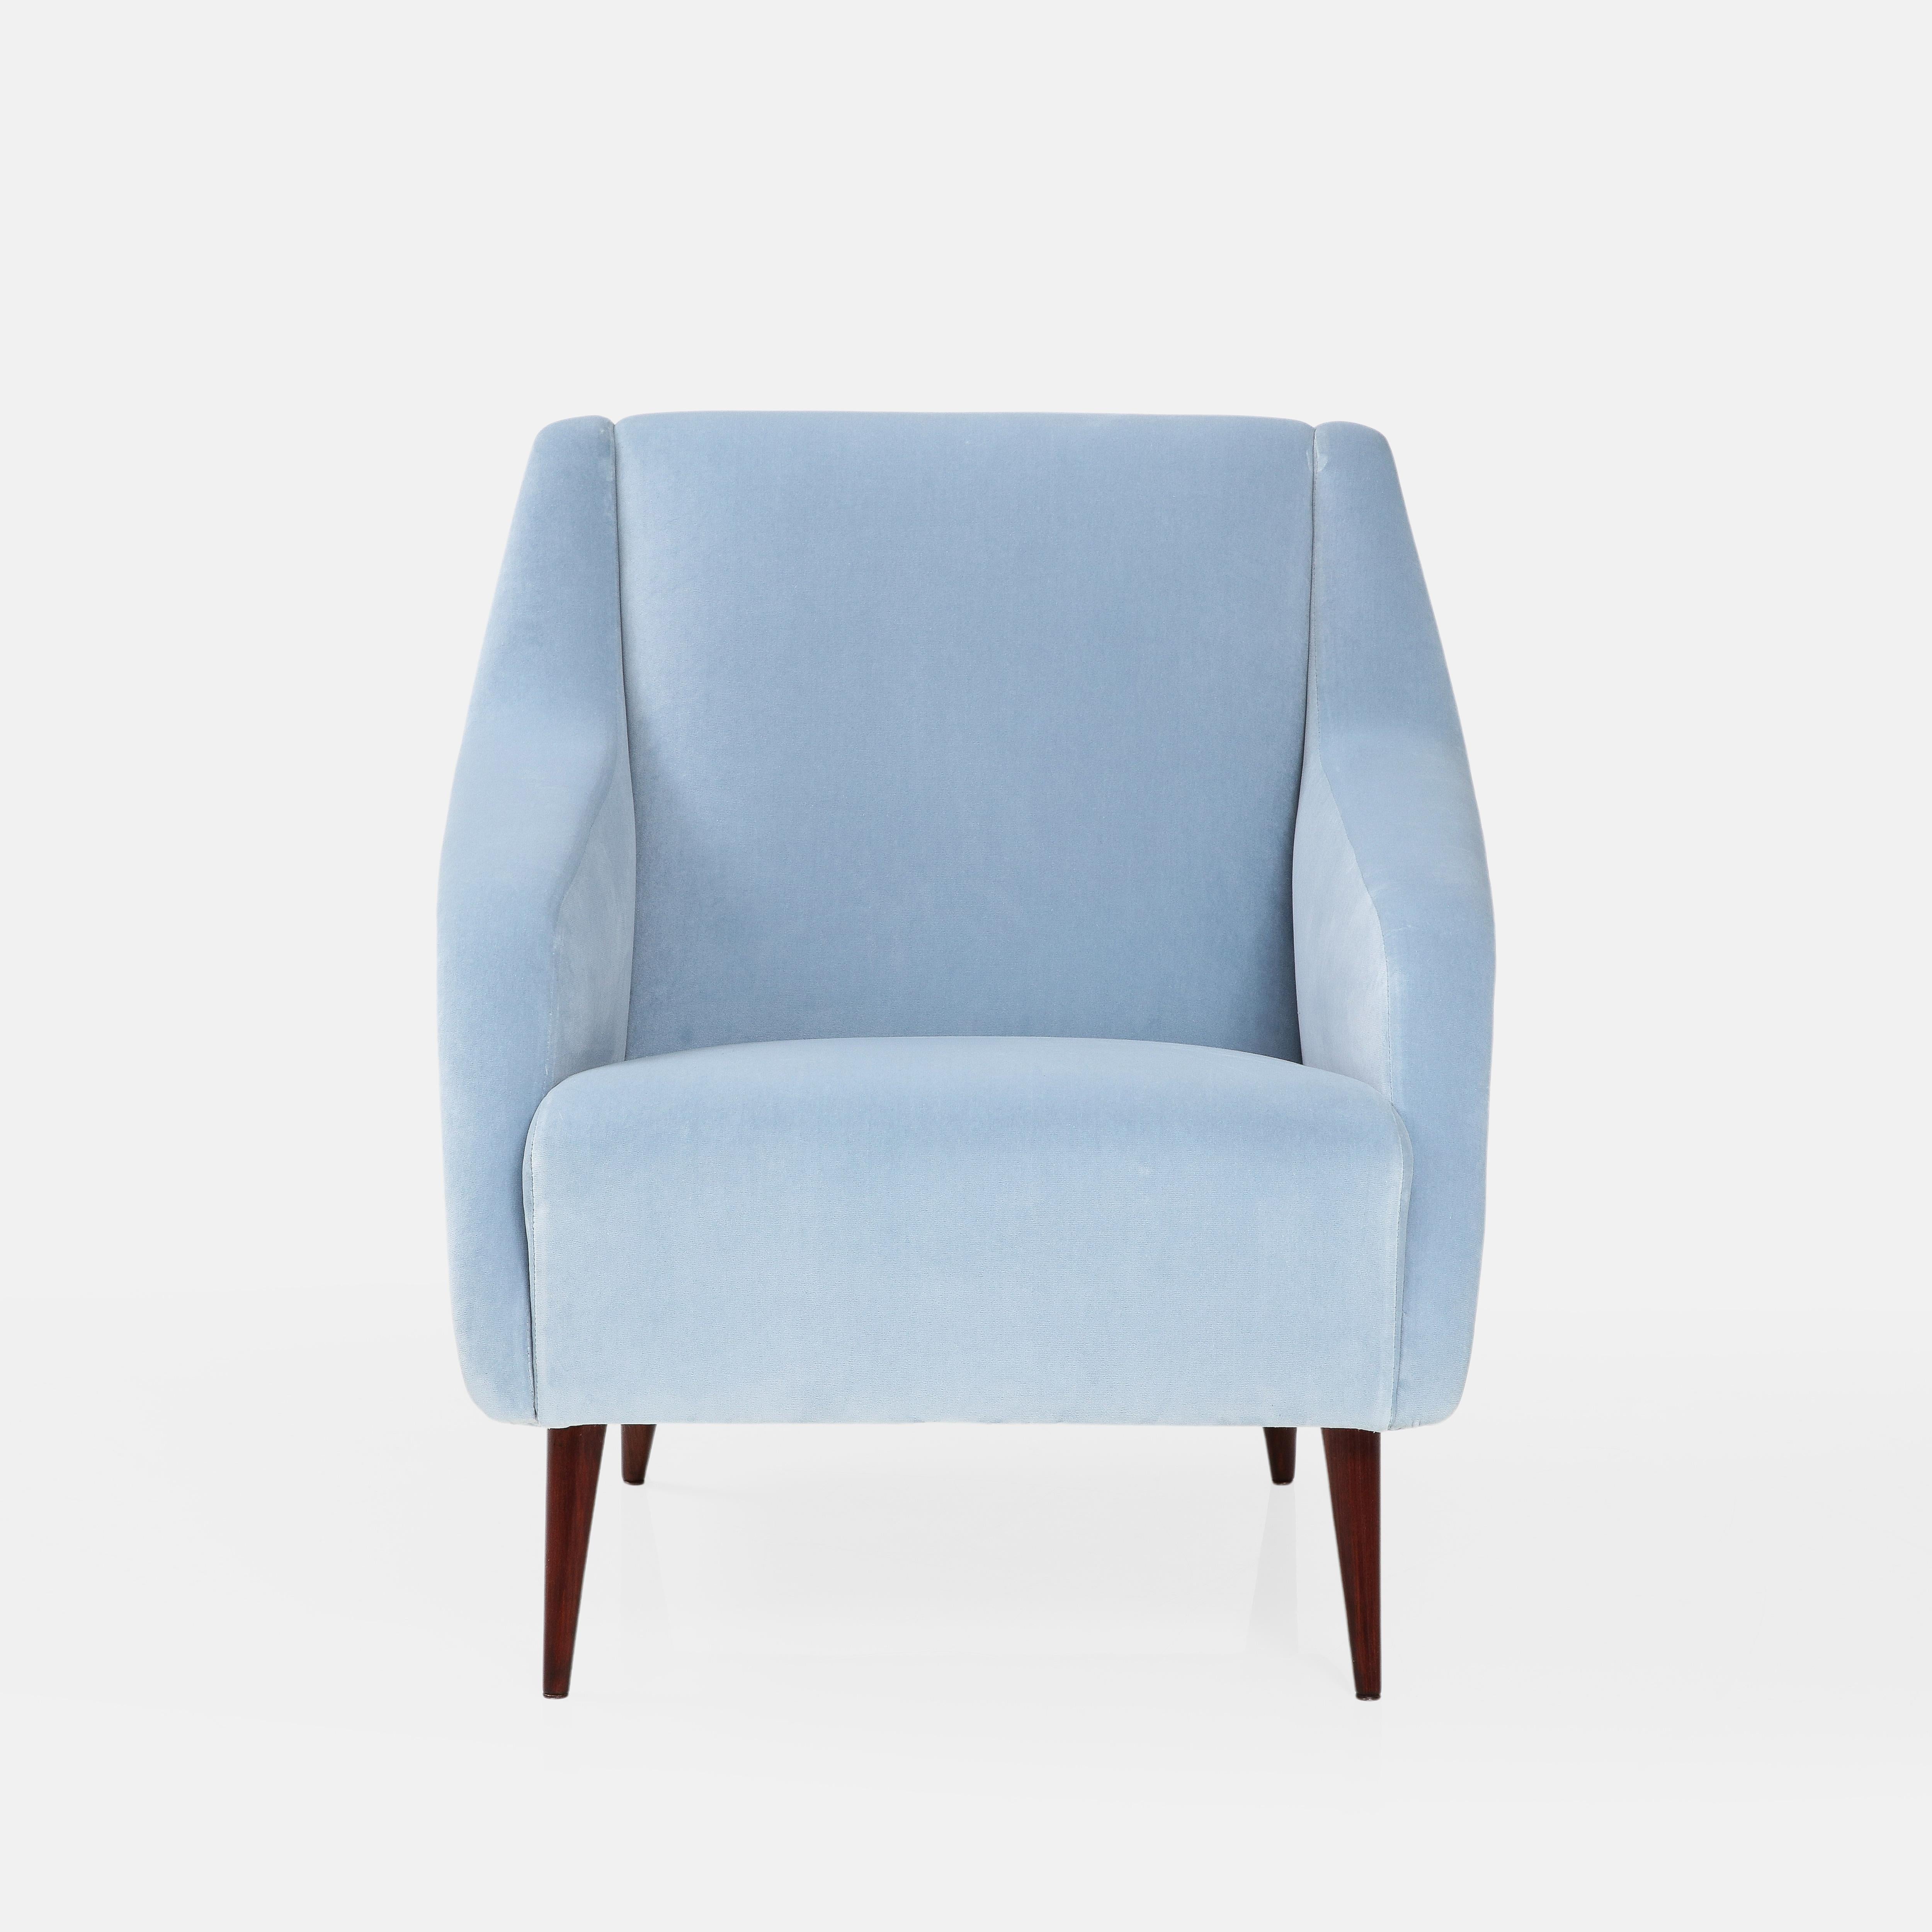 Mid-Century Modern Carlo De Carli for Cassina Lounge Chair Model 802 in Light Blue Velvet